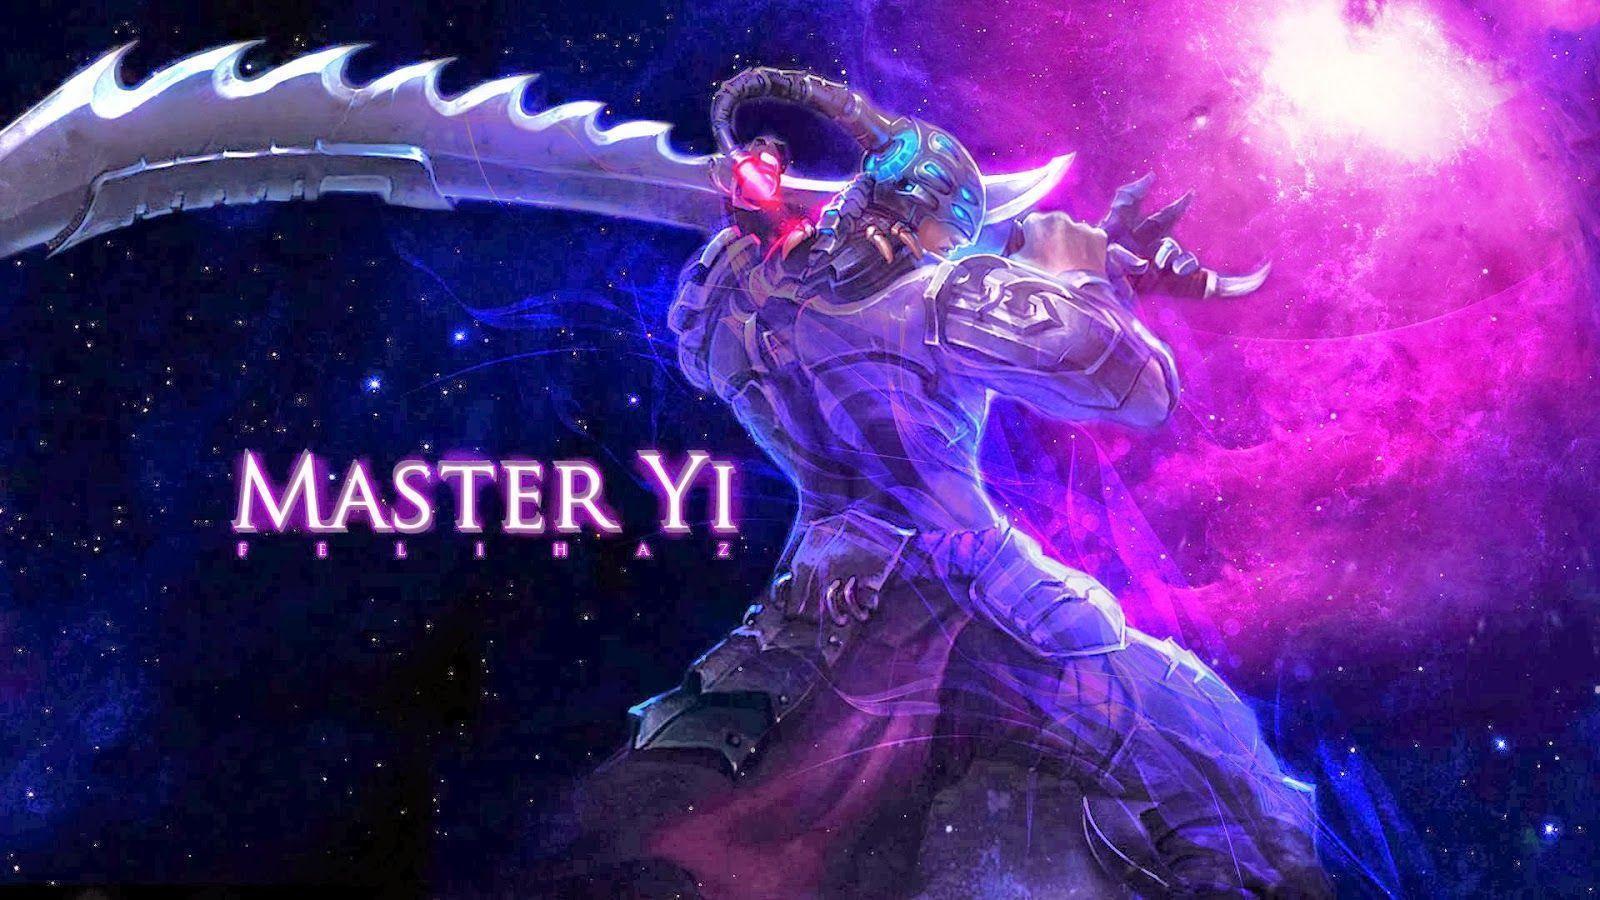 Master Yi League of Legends Wallpaper, Master Yi Desktop Wallpaper